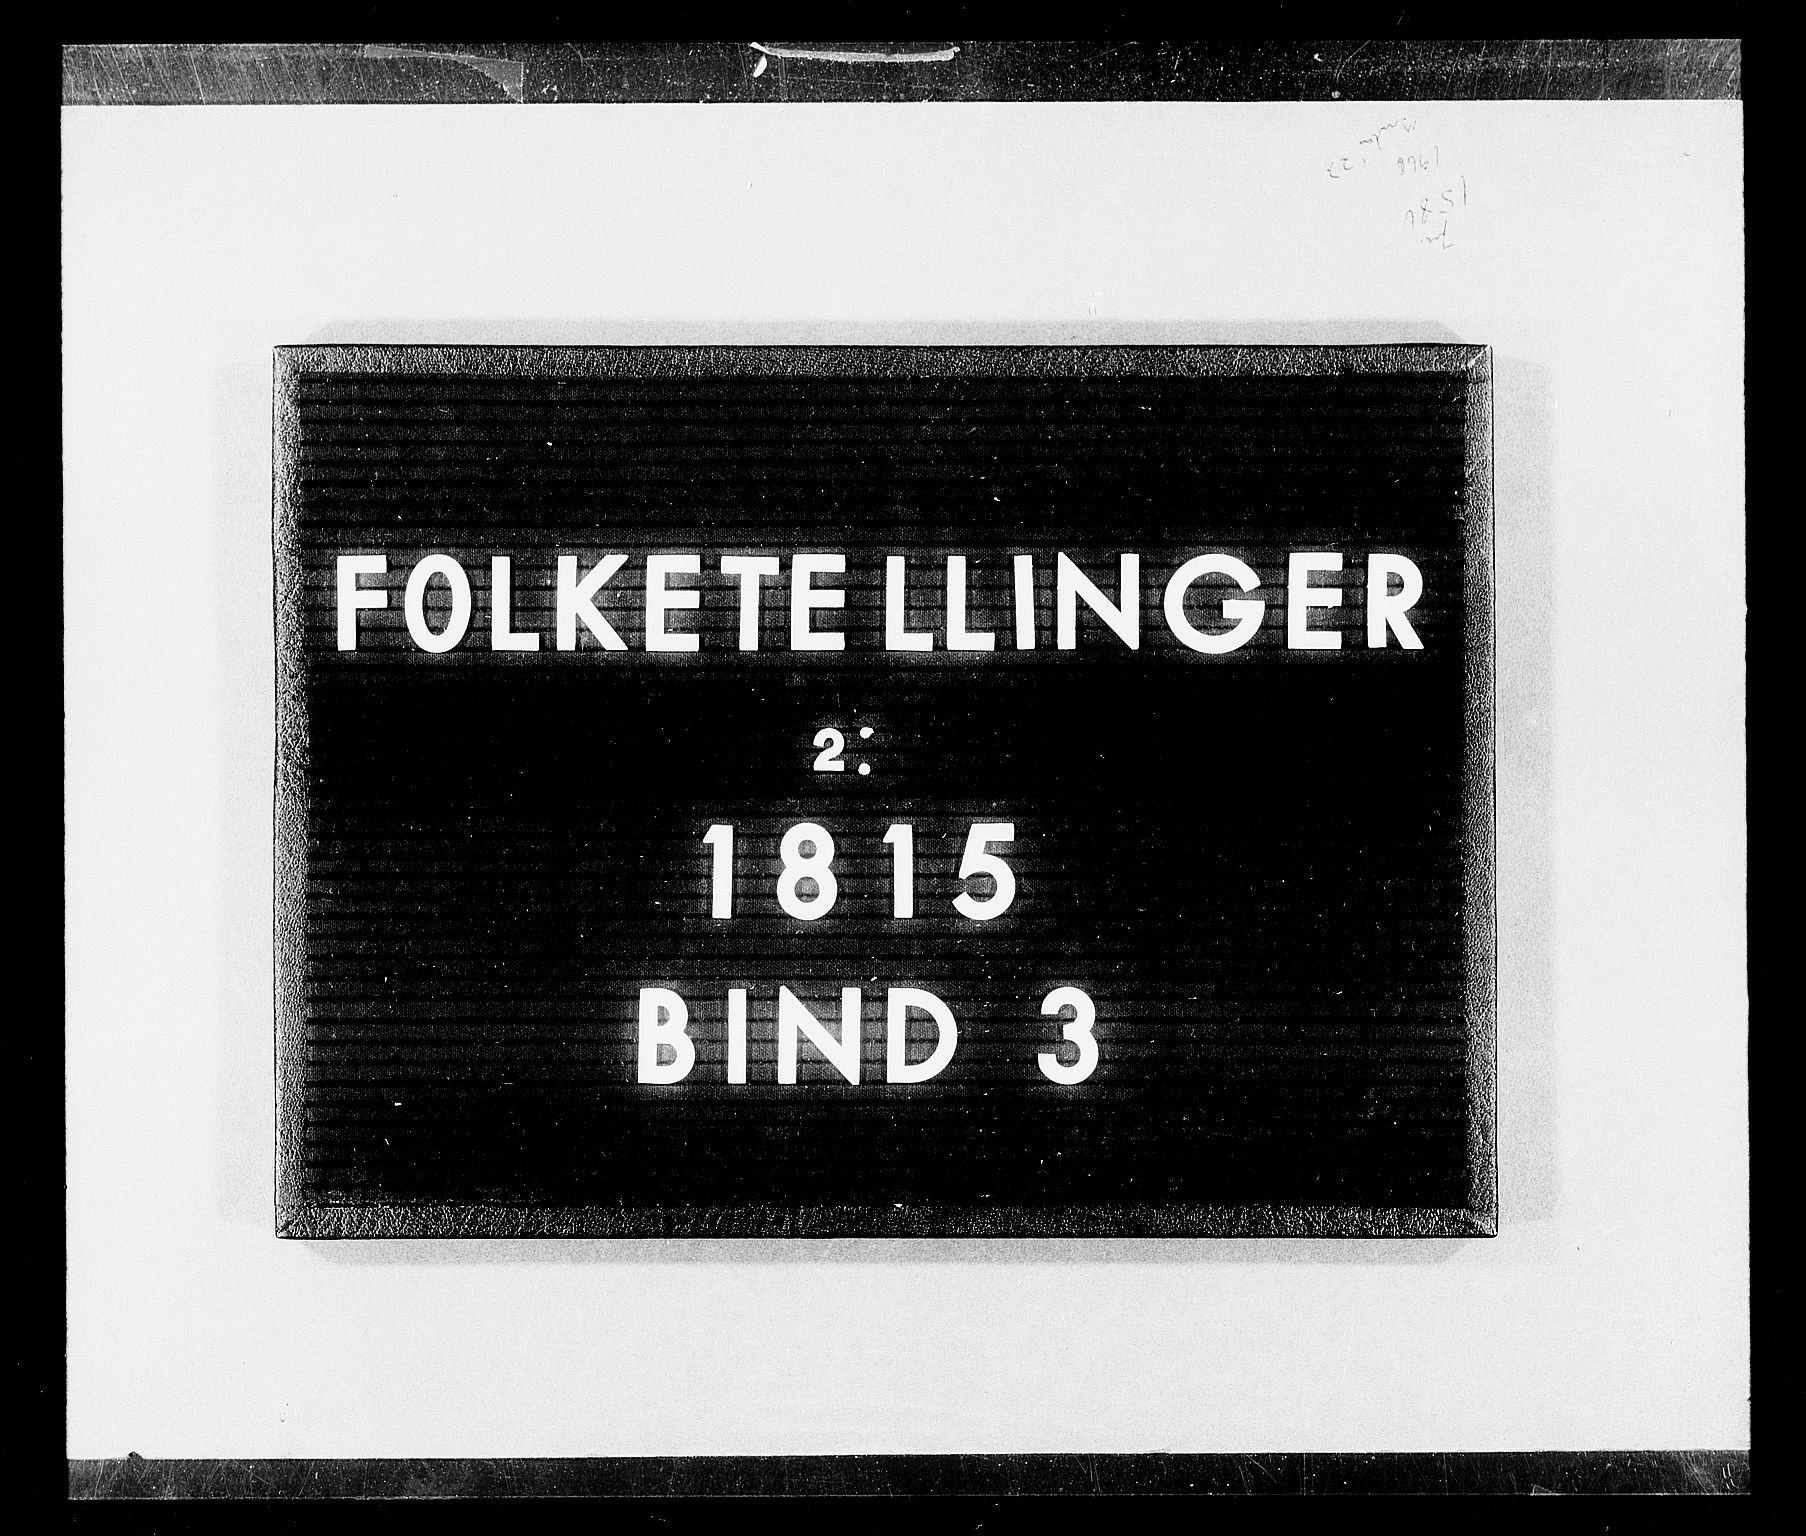 RA, Folketellingen 1815, bind 3: Tromsø stift og byene, 1815, s. 1